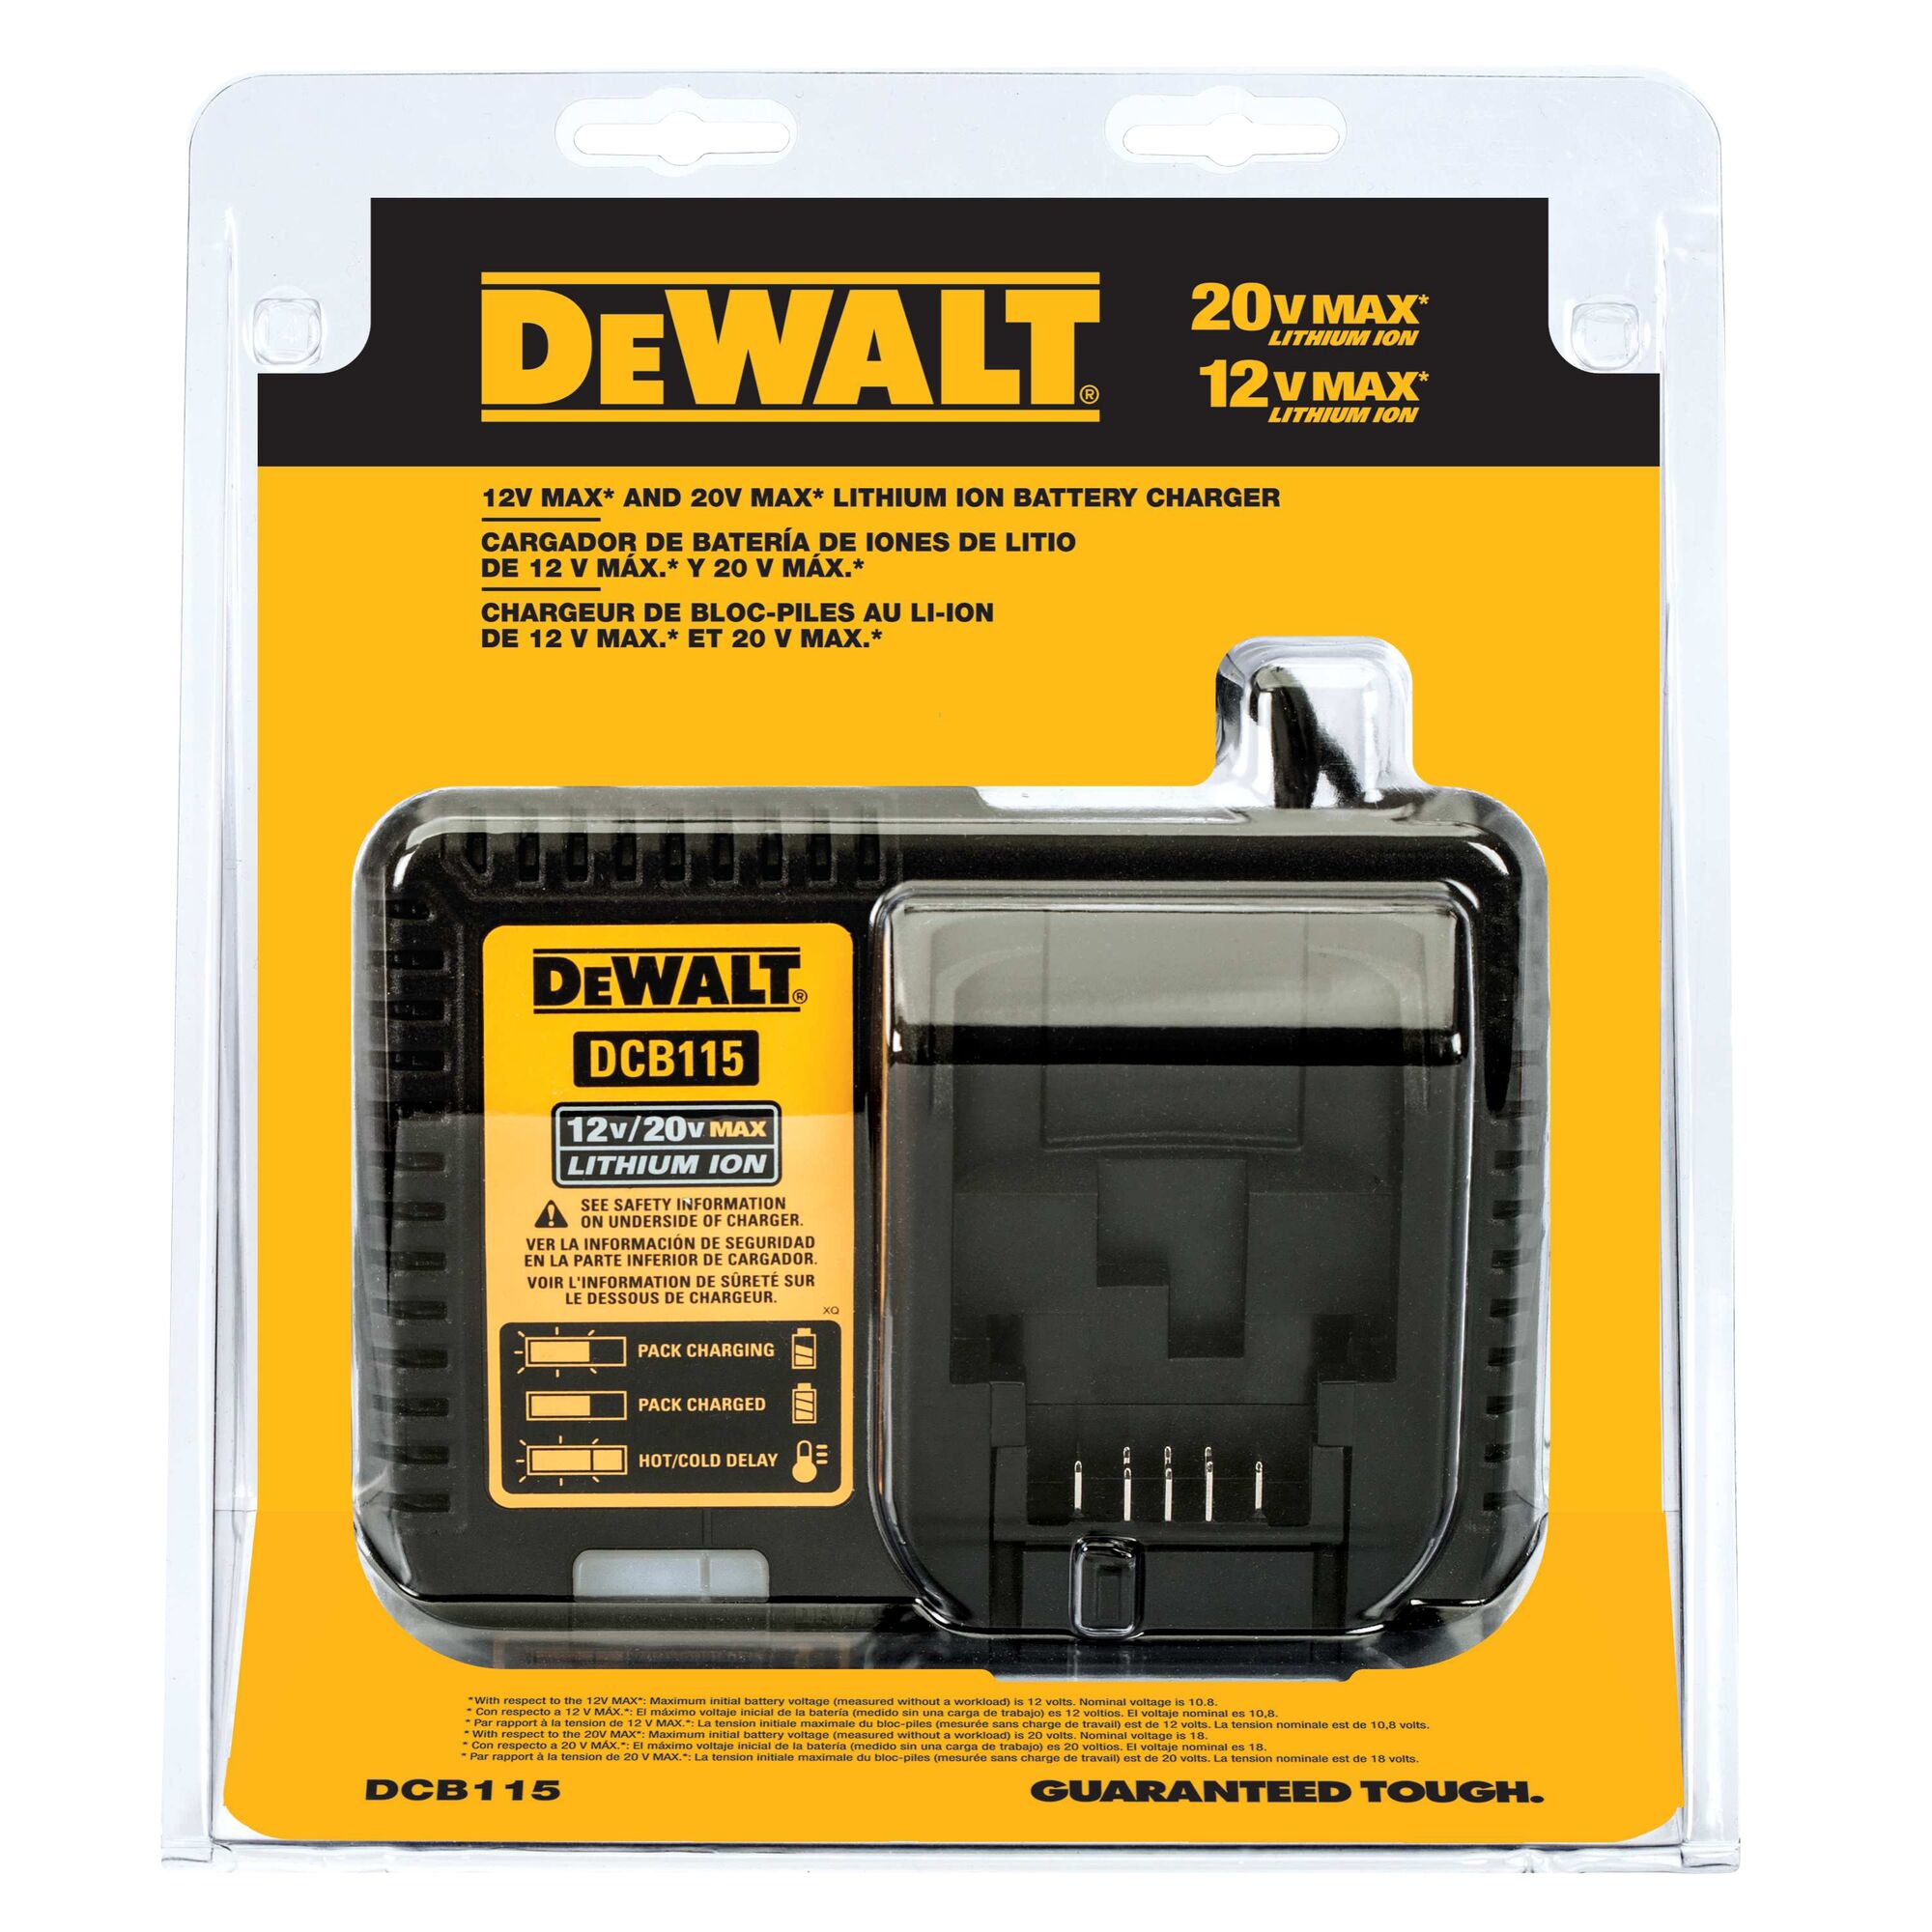 DeWalt Battery Charger DCB115 12V/20V USB Lithium Ion Tested Charger Only 